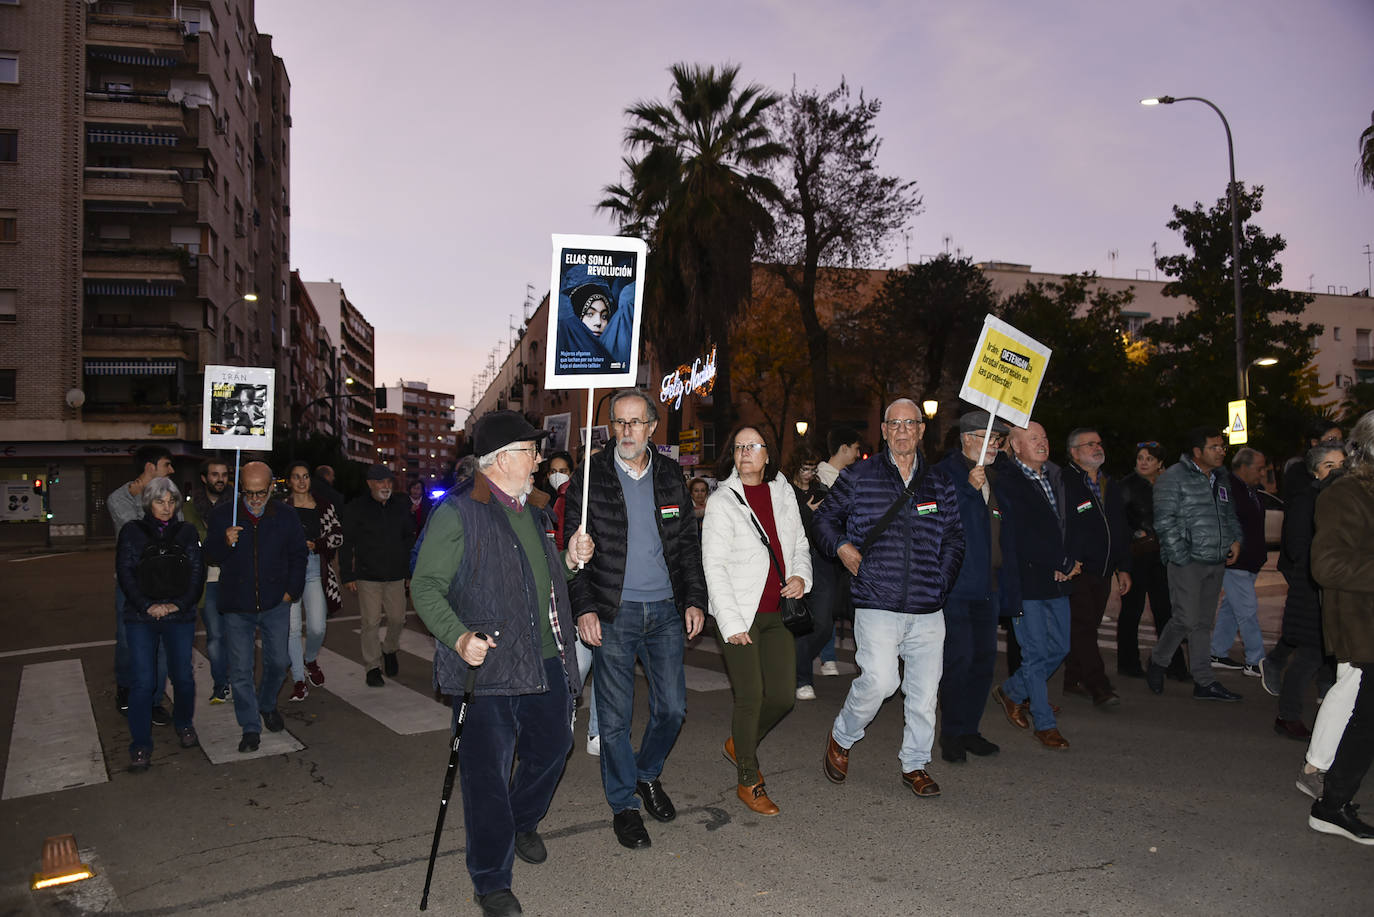 Manifestación del 25N en Badajoz. 